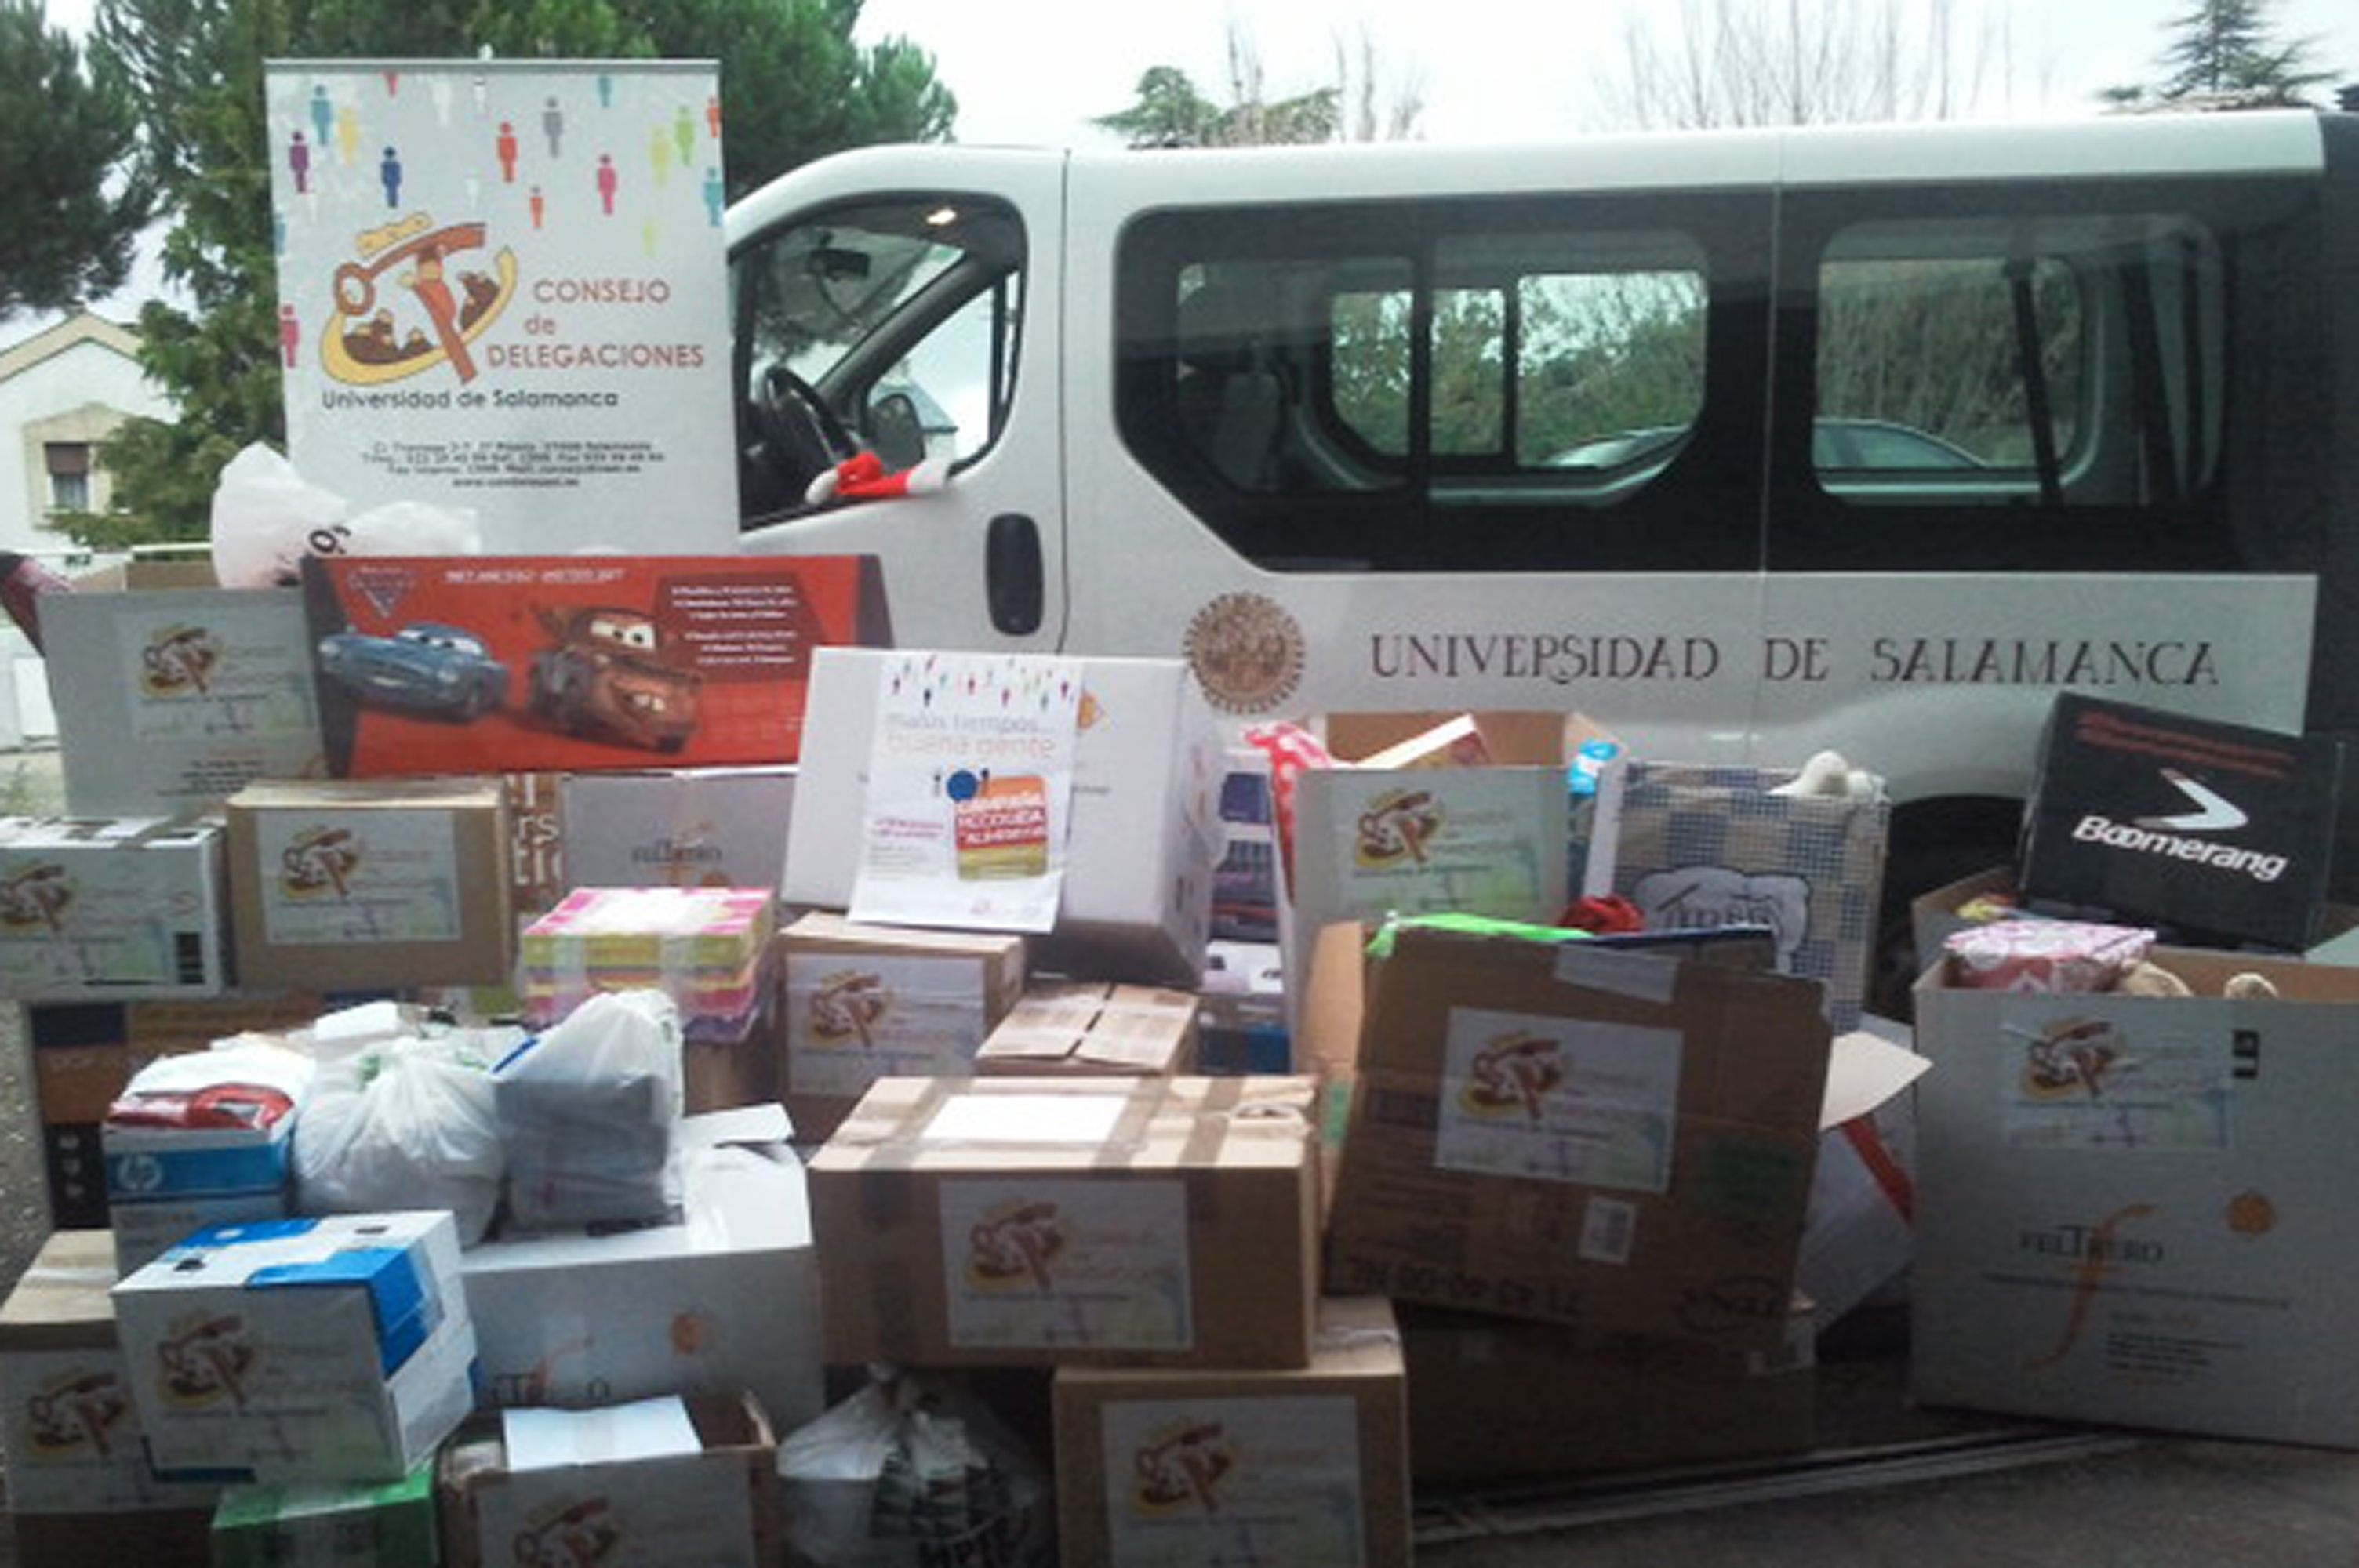 El Consejo de Delegaciones de la Universidad de Salamanca entrega 15 cajas de juguetes y casi media tonelada de alimentos